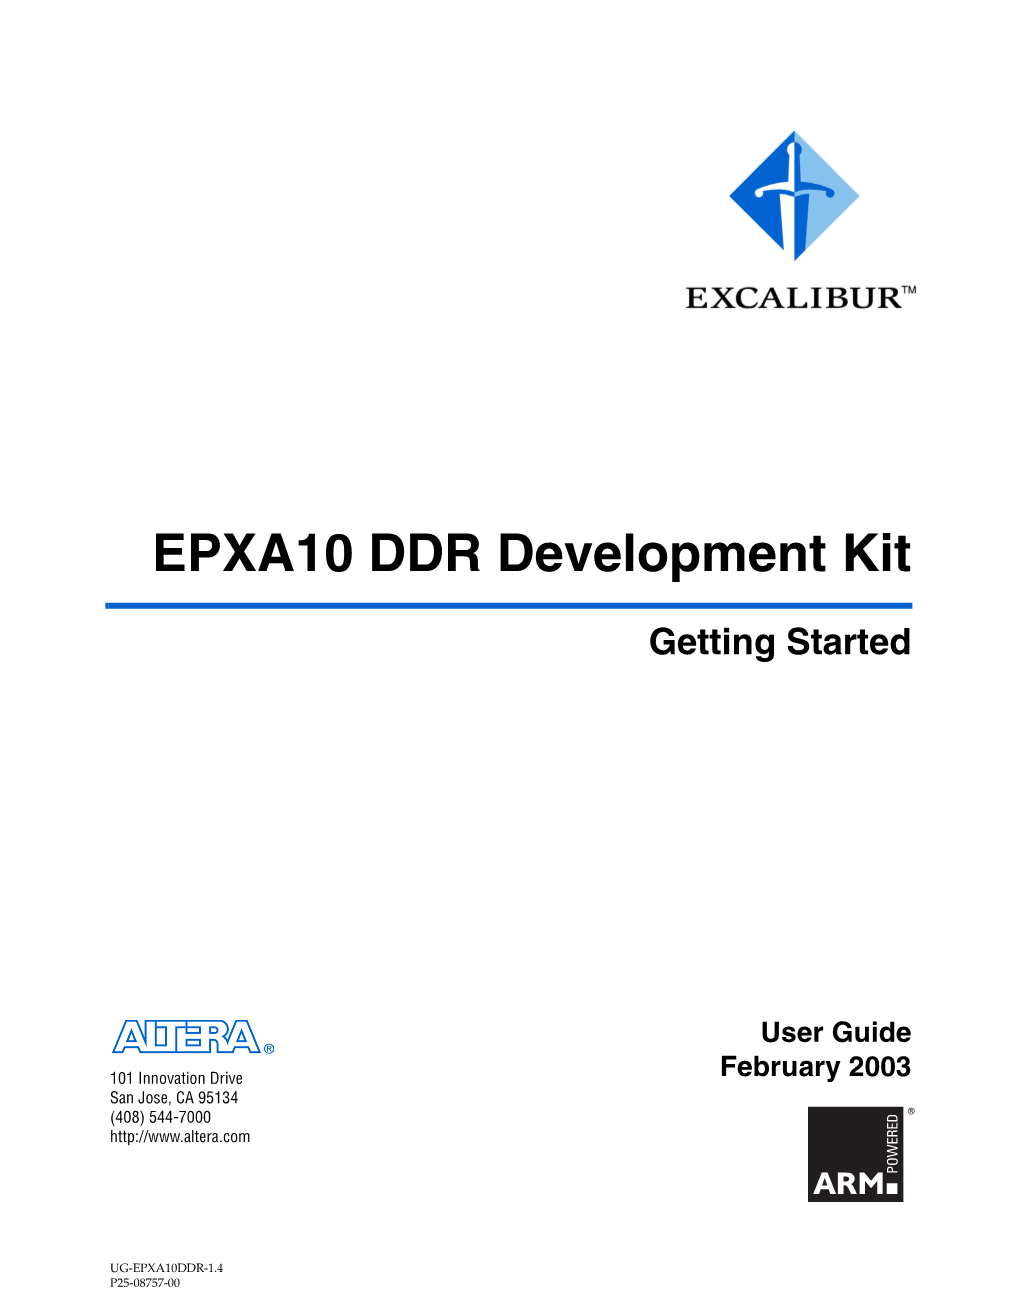 EPXA10 Development Kit Getting Started User Guide